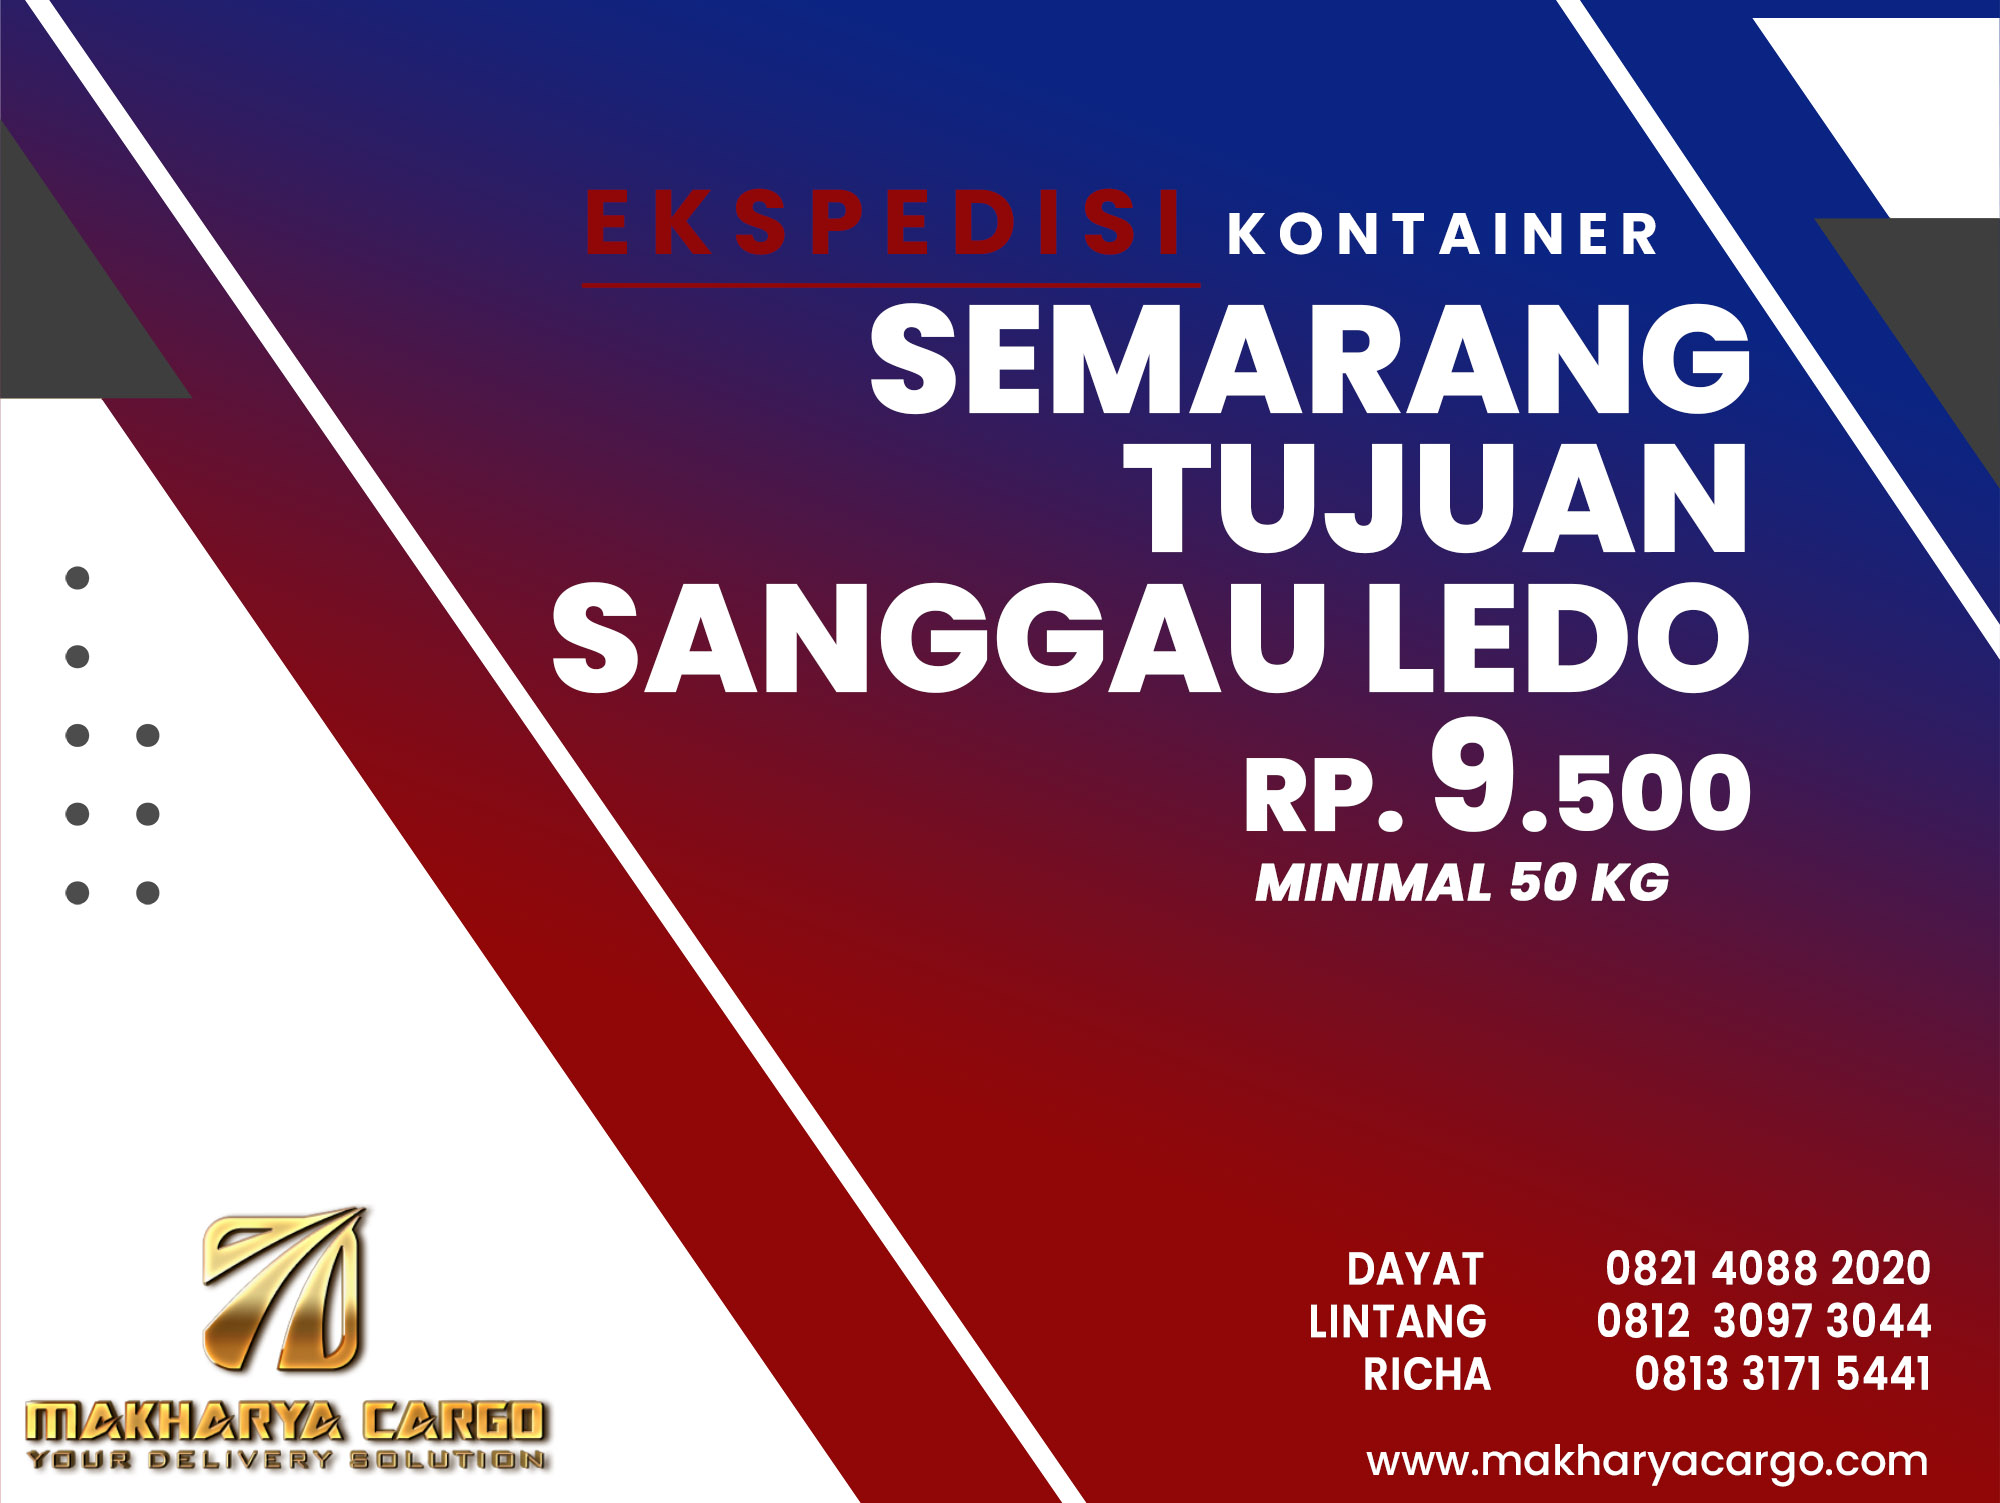 Ekspedisi Kontainer Semarang SanggauLedo